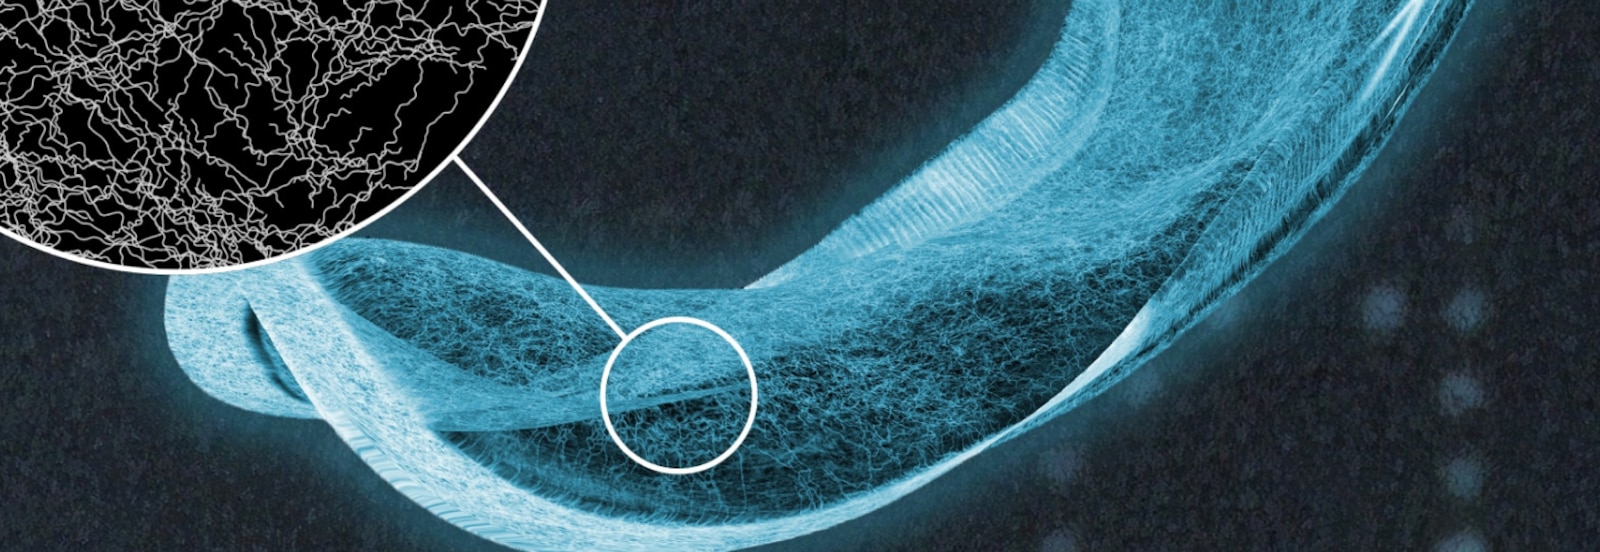 Radiografía de una compresa absorbente TENA, con una vista detallada de las fibras del núcleo absorbente 